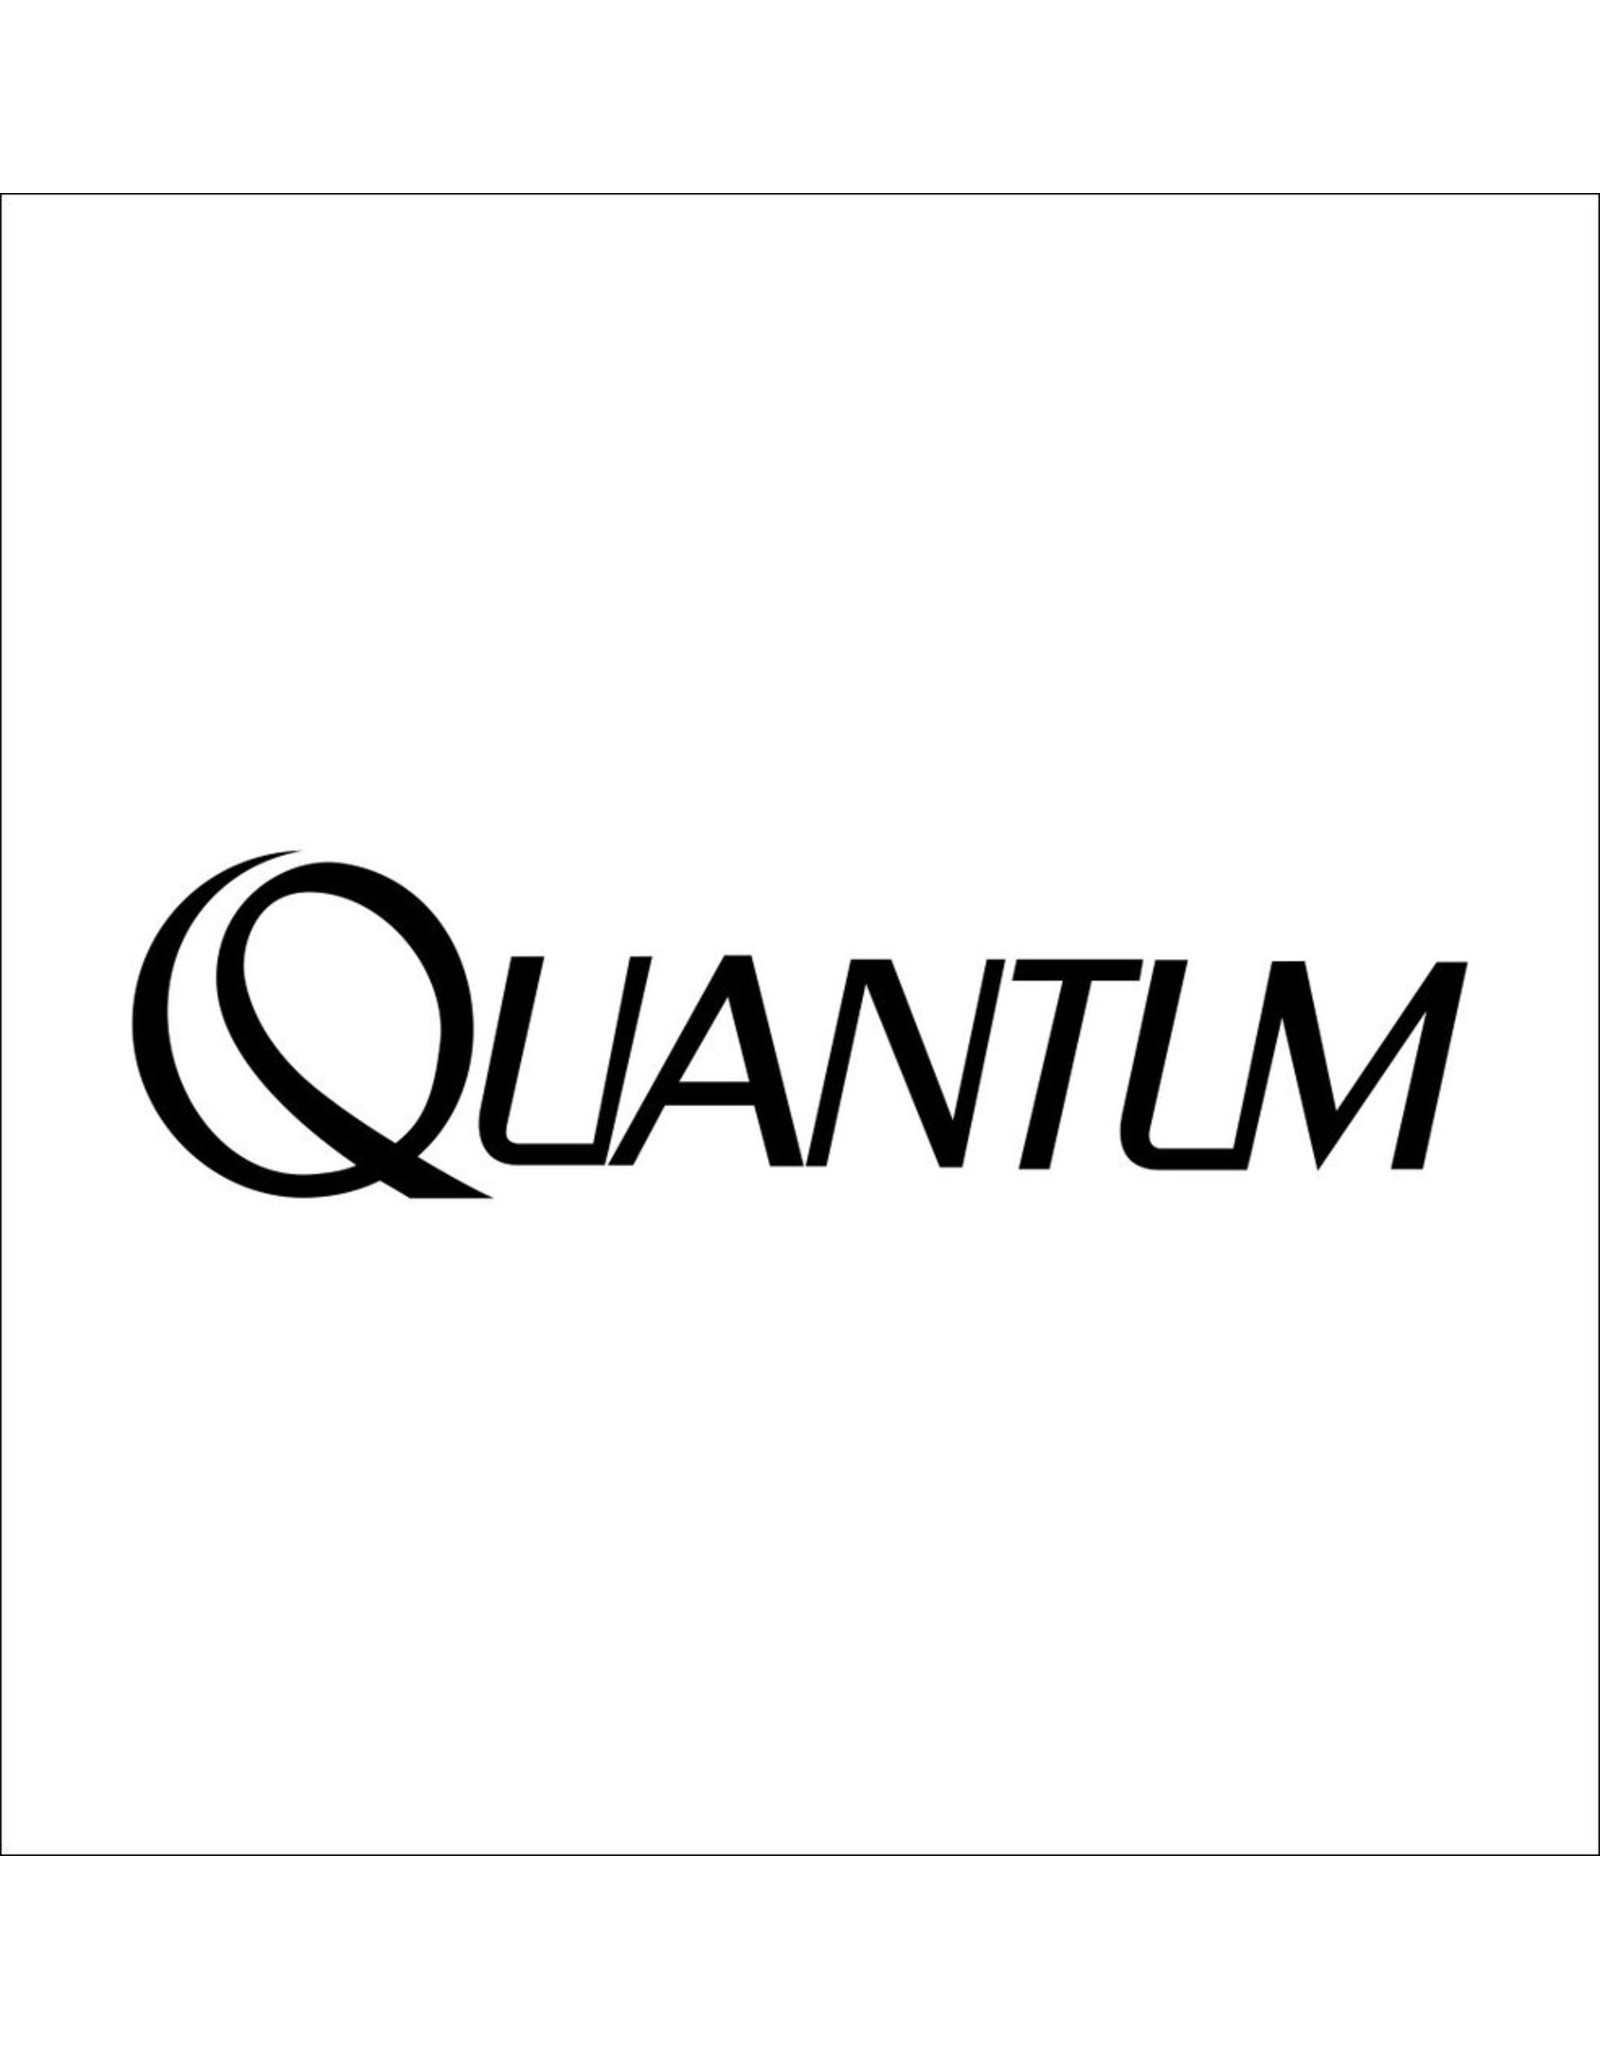 Quantum CV037-01  FLIPPING CAM